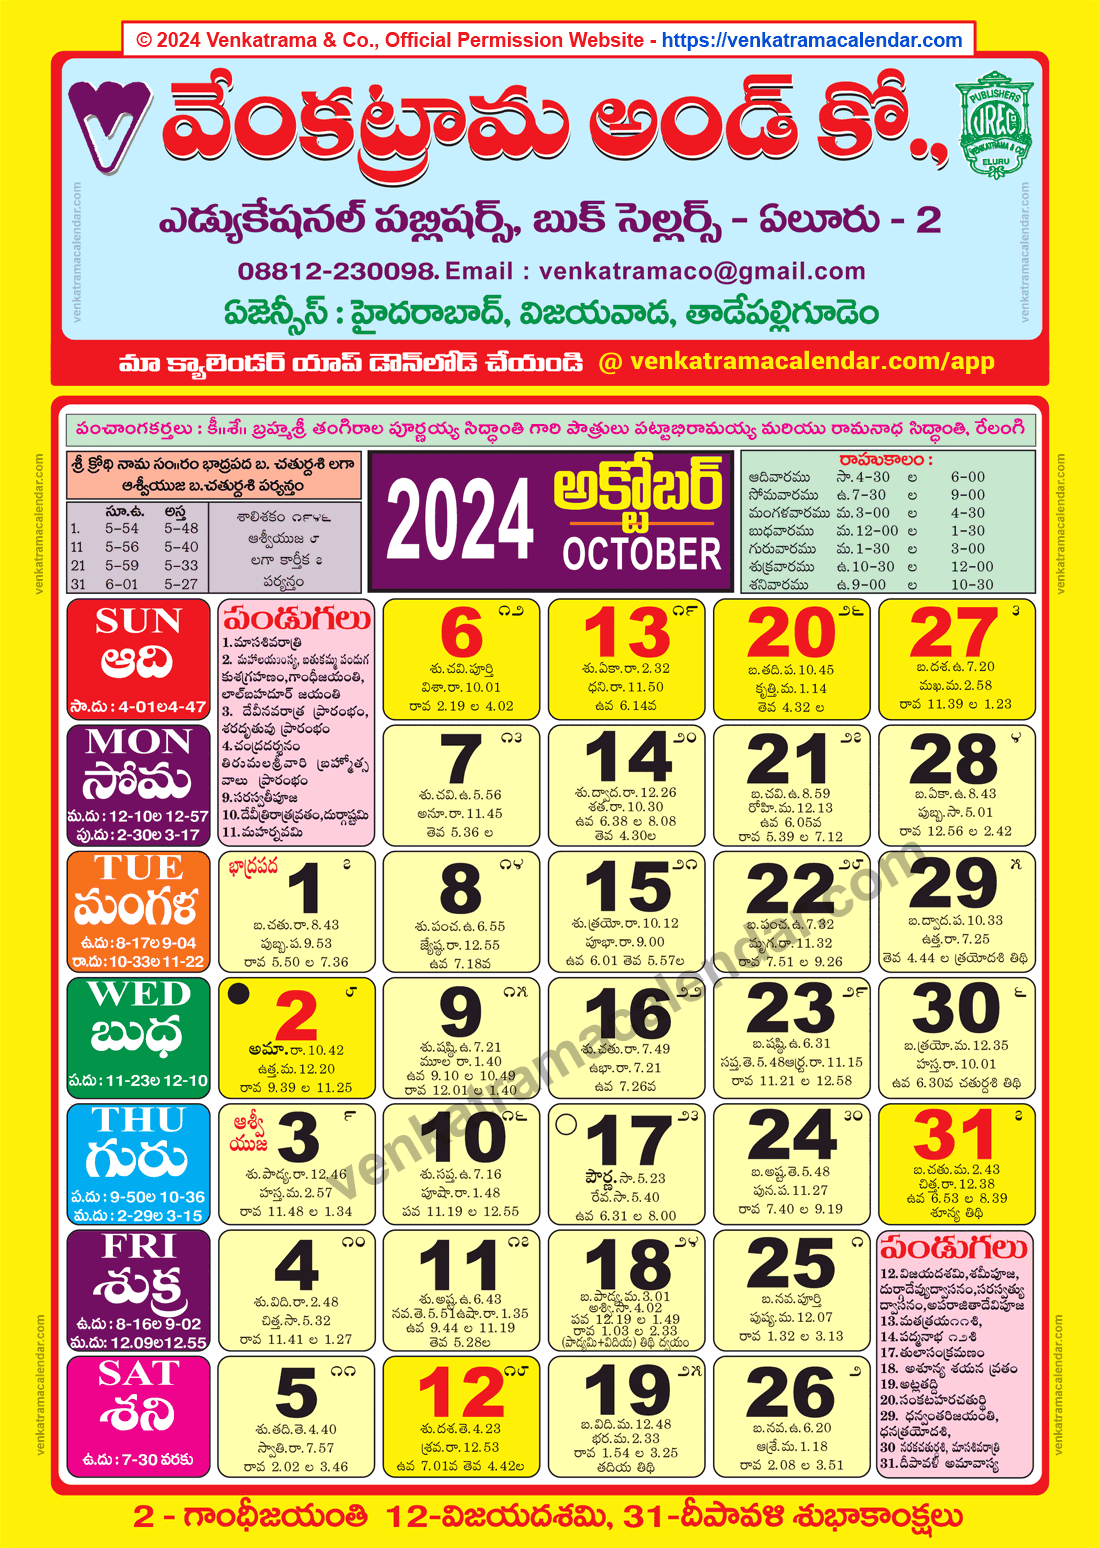 Venkatrama Calendar 2024 October